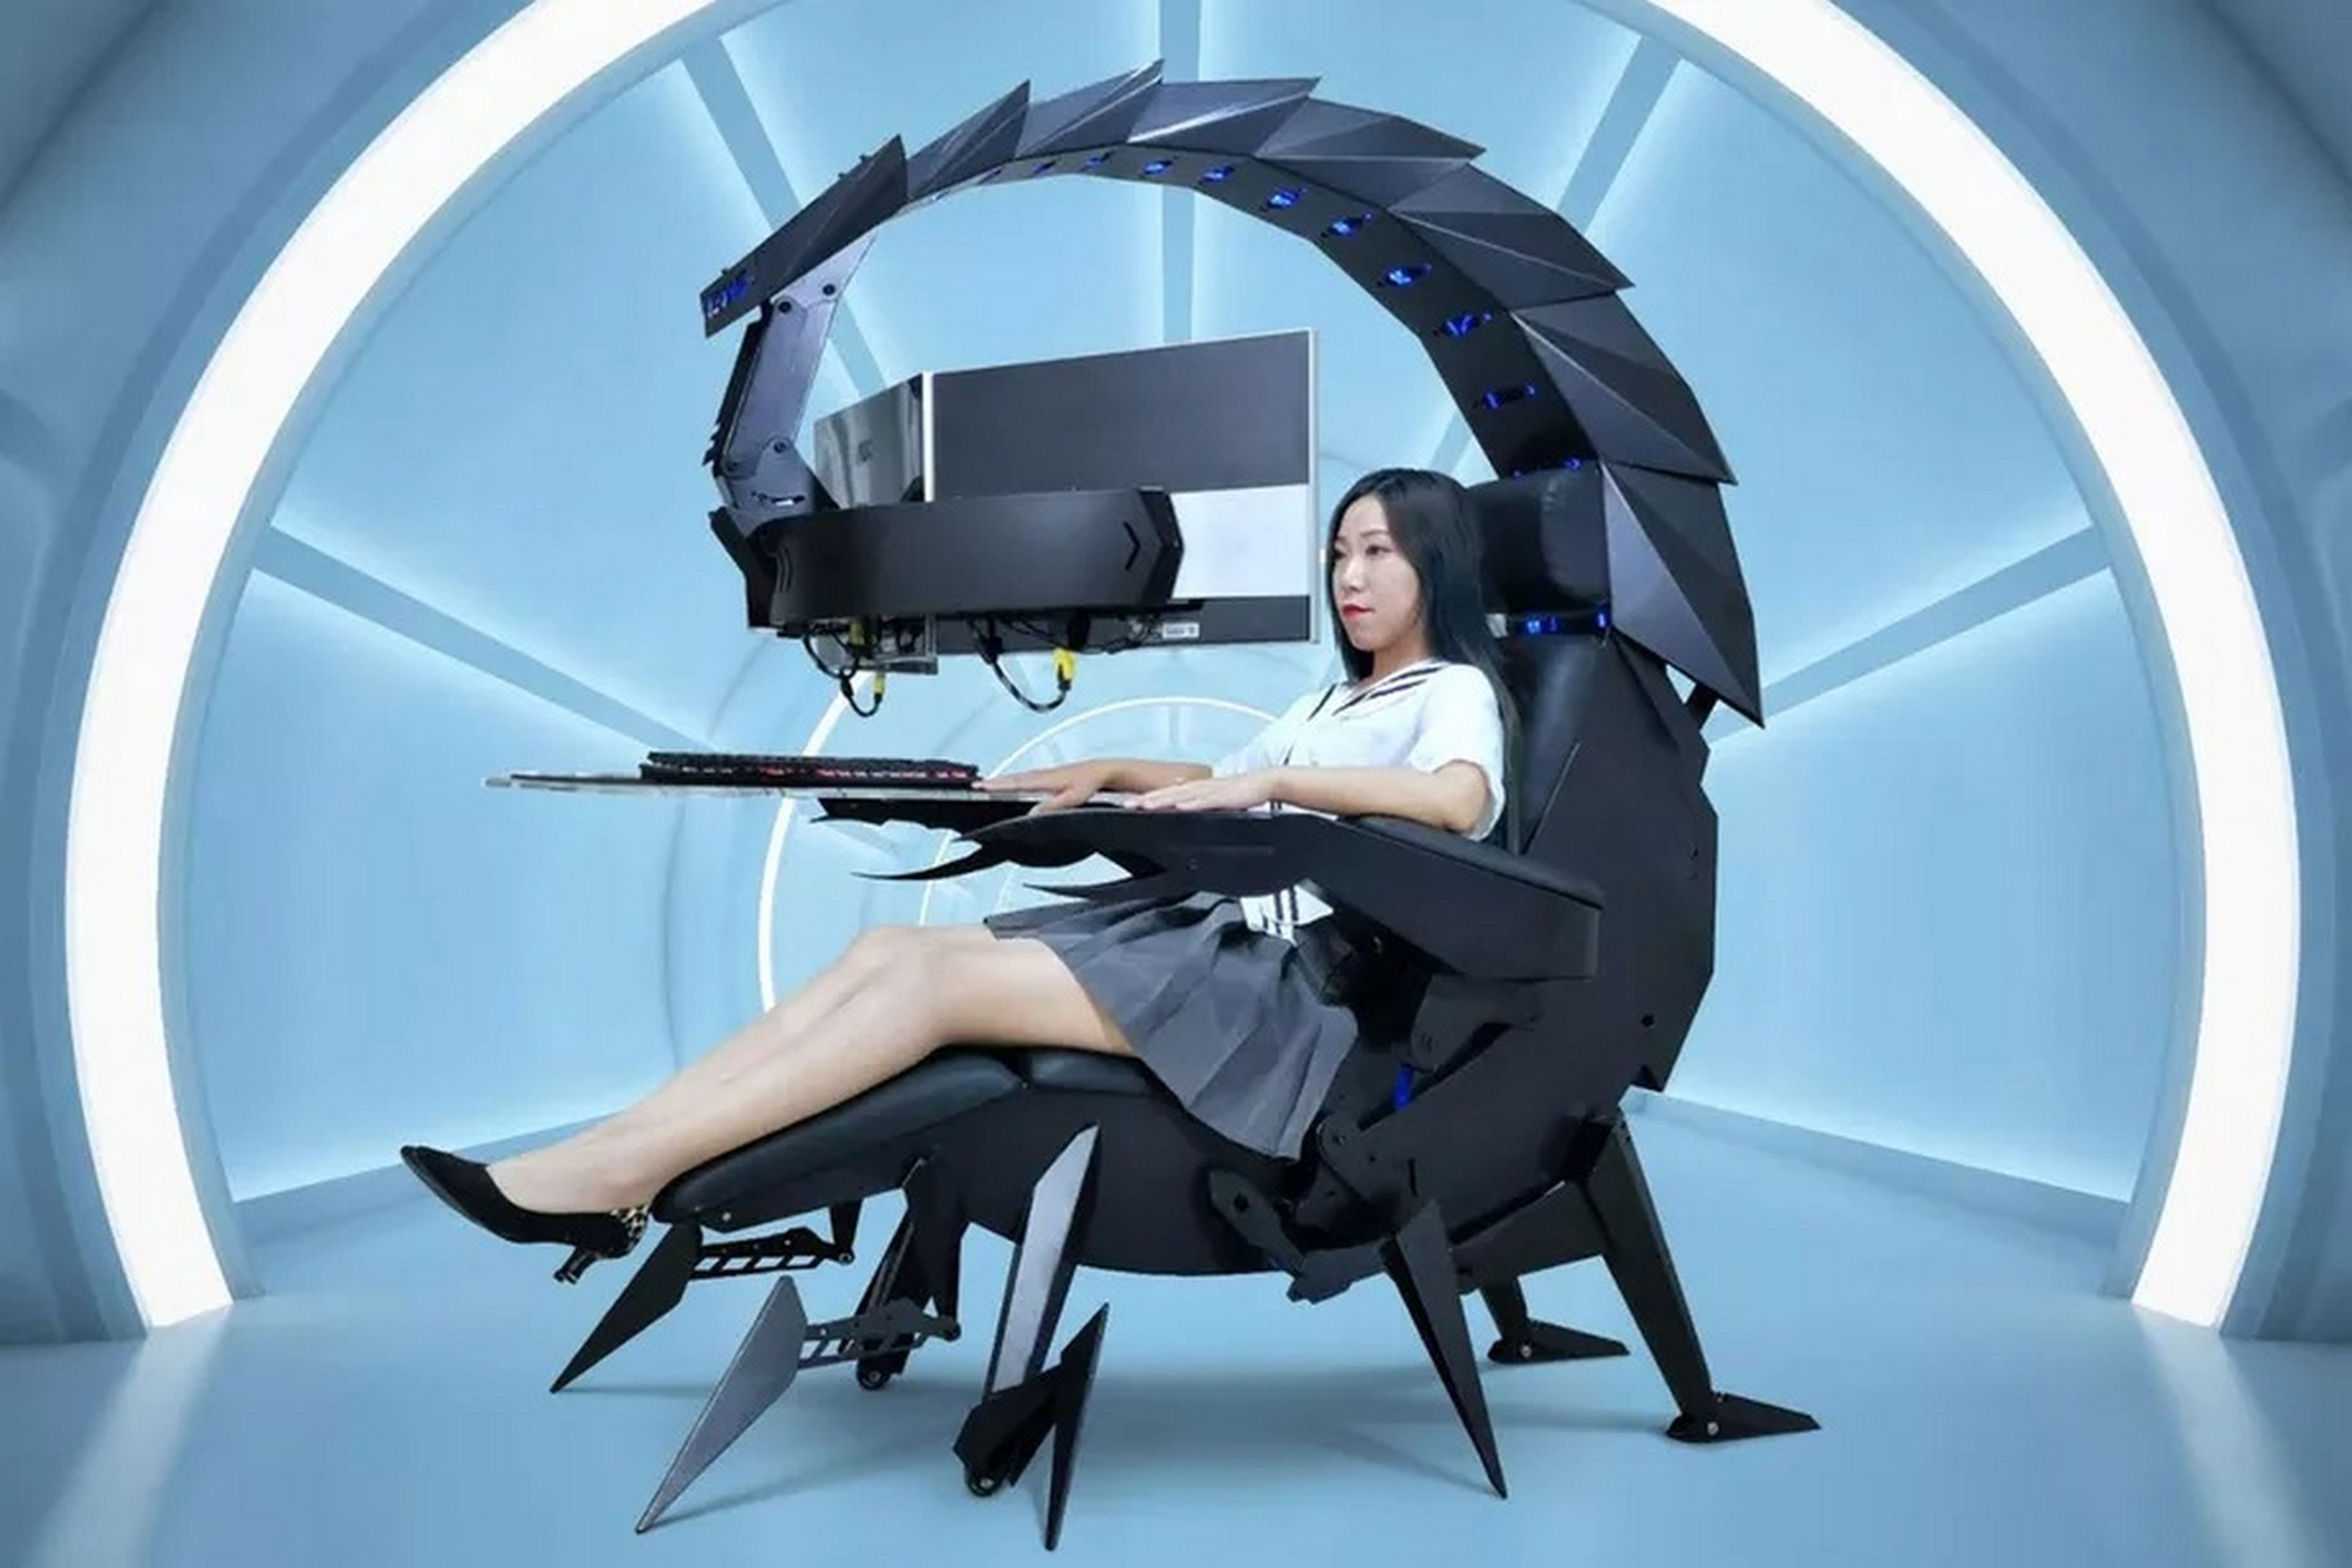 Aterroriza a tus rivales con esta silla gaming motorizada con forma de escorpión